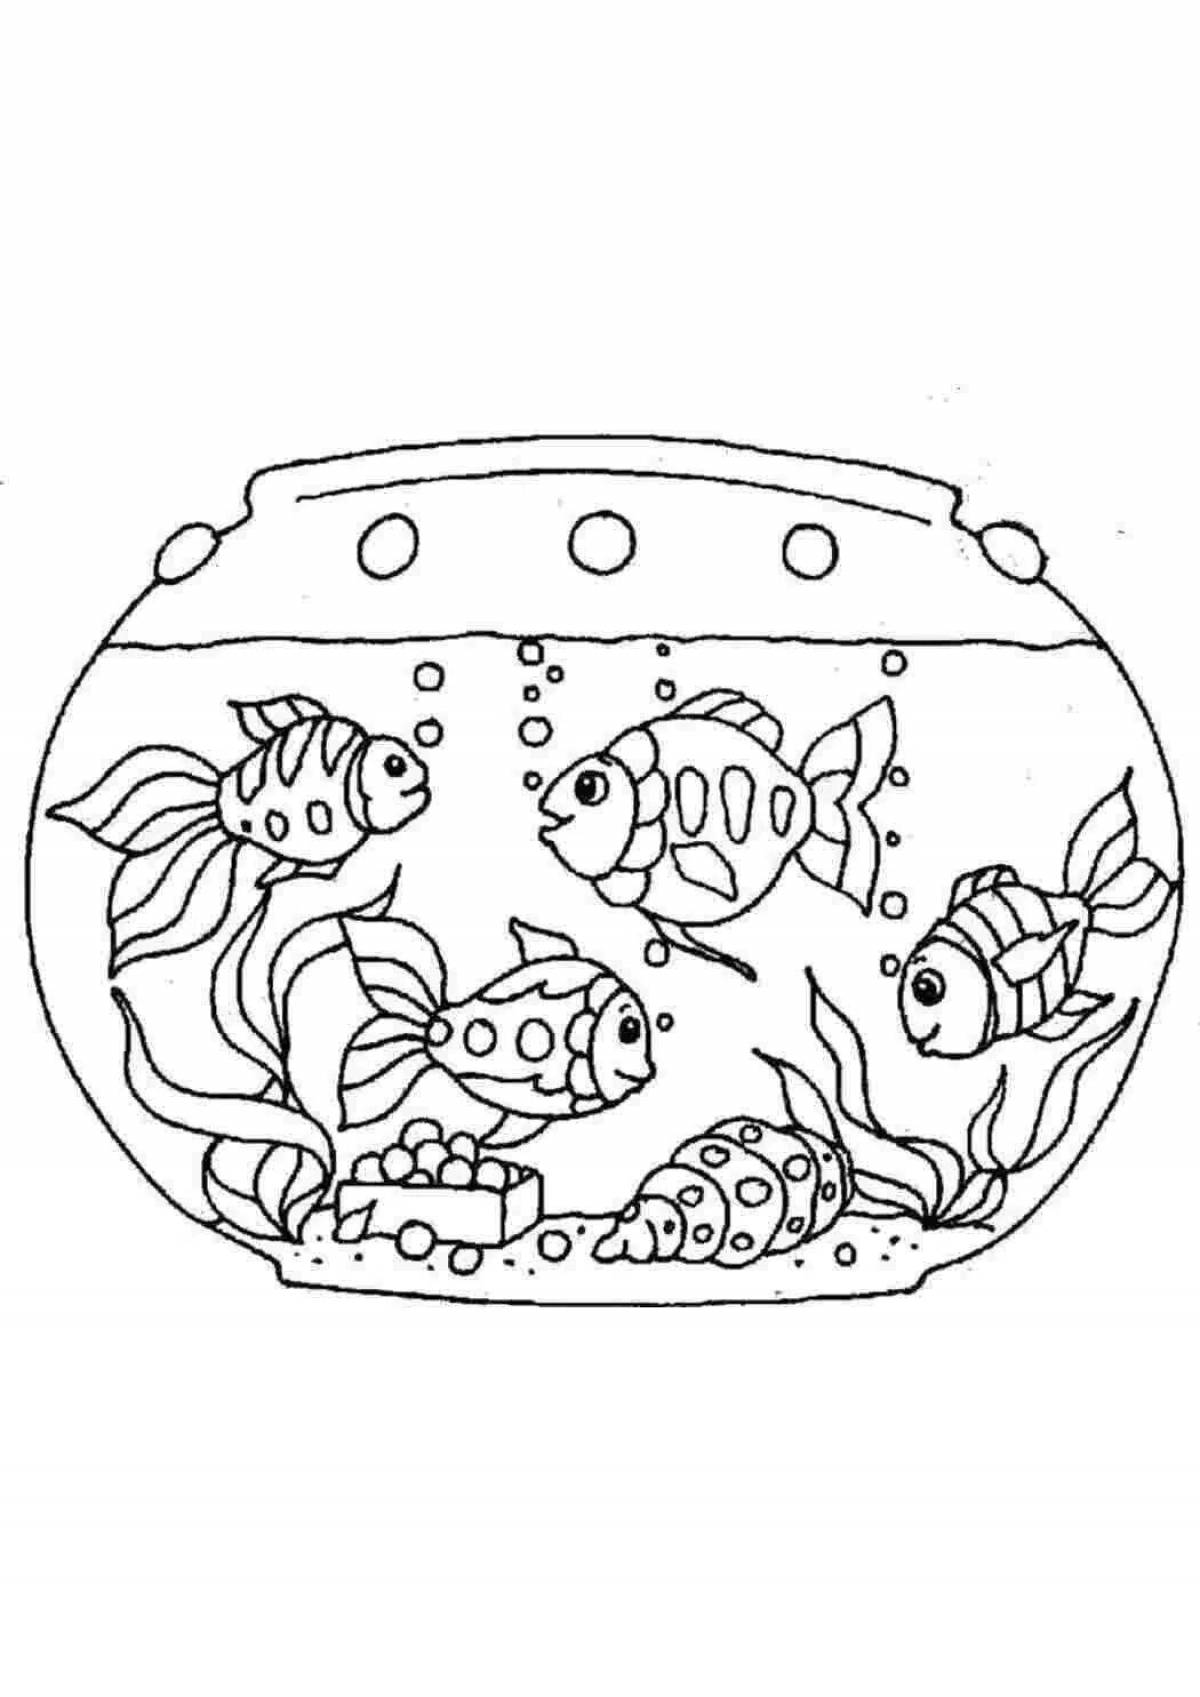 Увлекательная раскраска аквариумных рыбок для детей